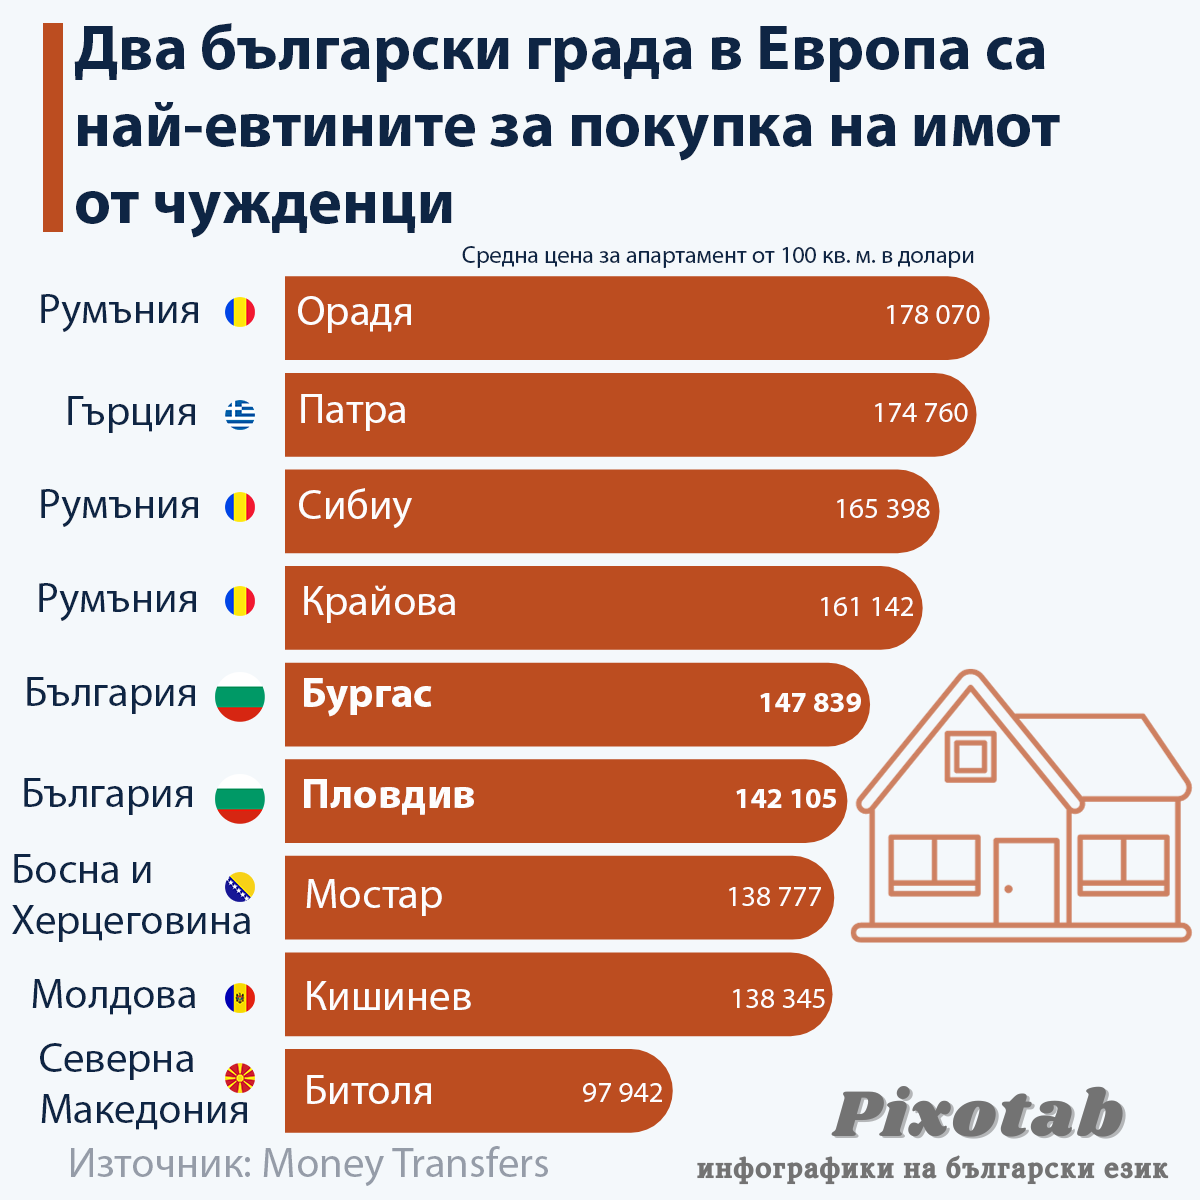 Два български града в Европа са най-евтините за покупка на имот от чужденци